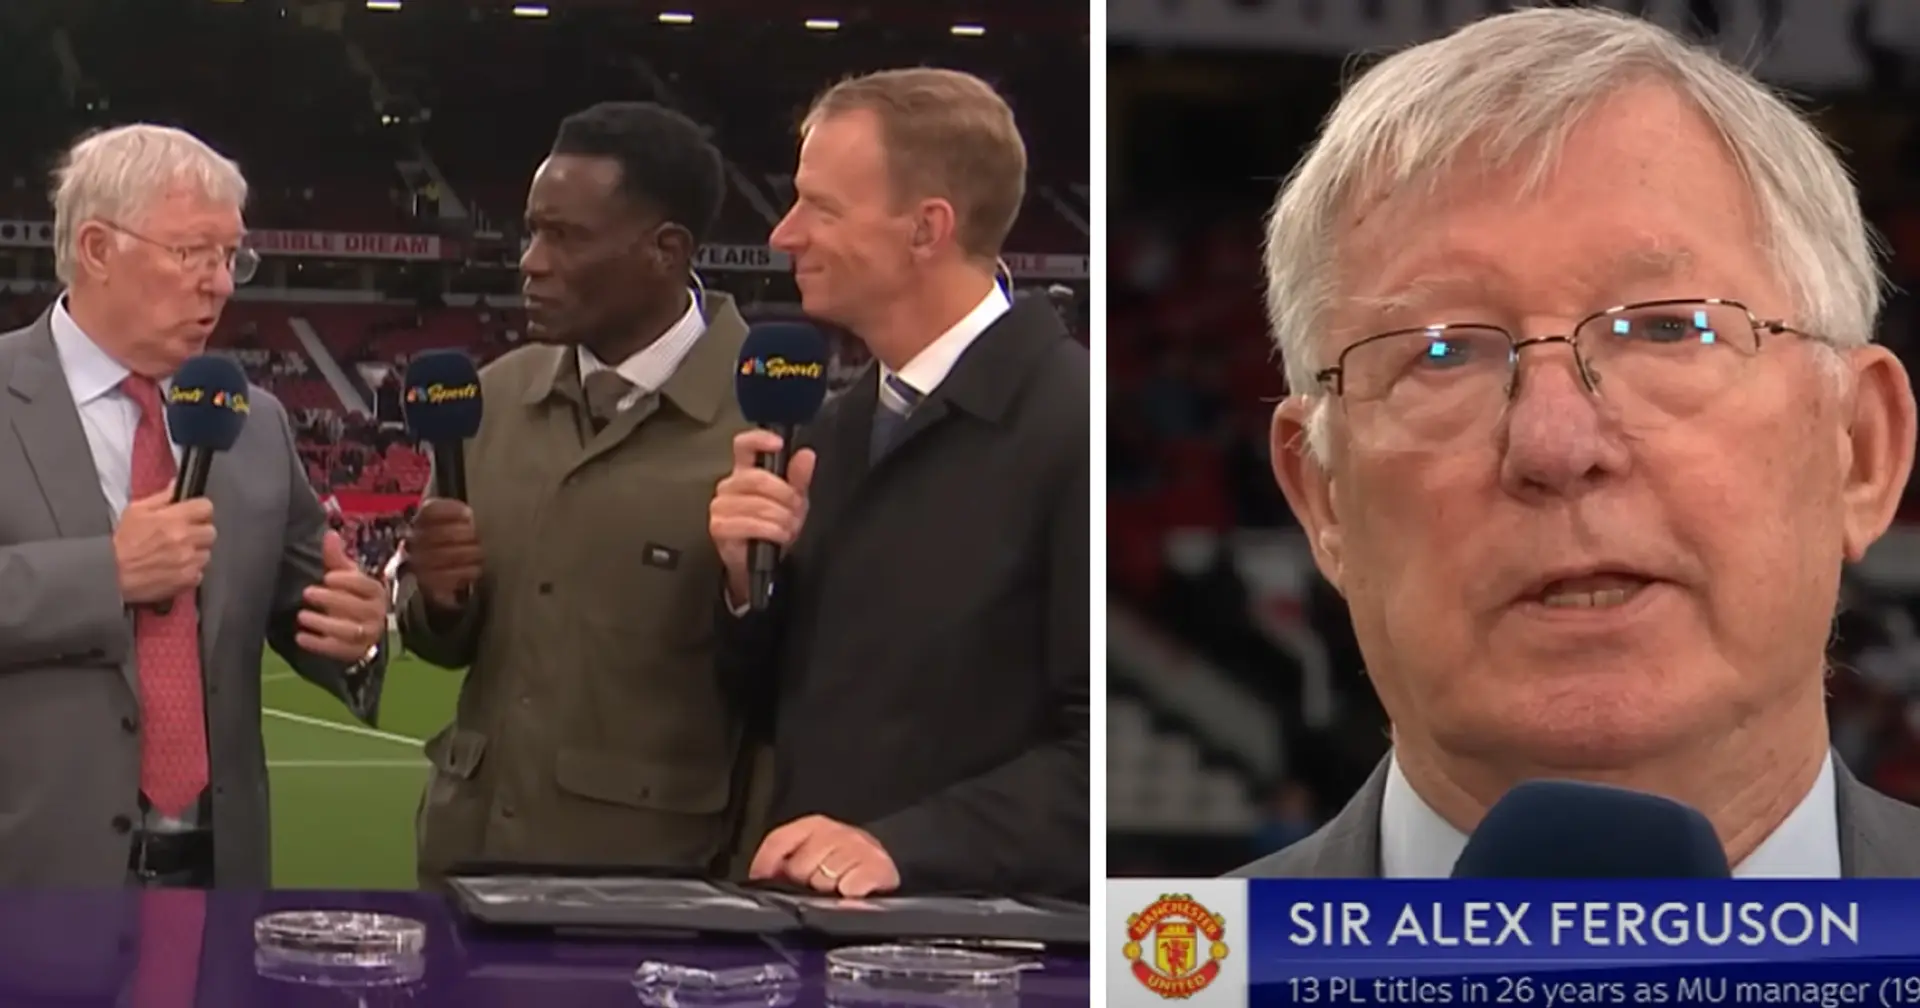 "Ich konnte das Ergebnis nicht glauben": Sir Alex Ferguson nennt eine unglaubliche Mannschaft, die ihn am ersten Spieltag sehr überrascht hat